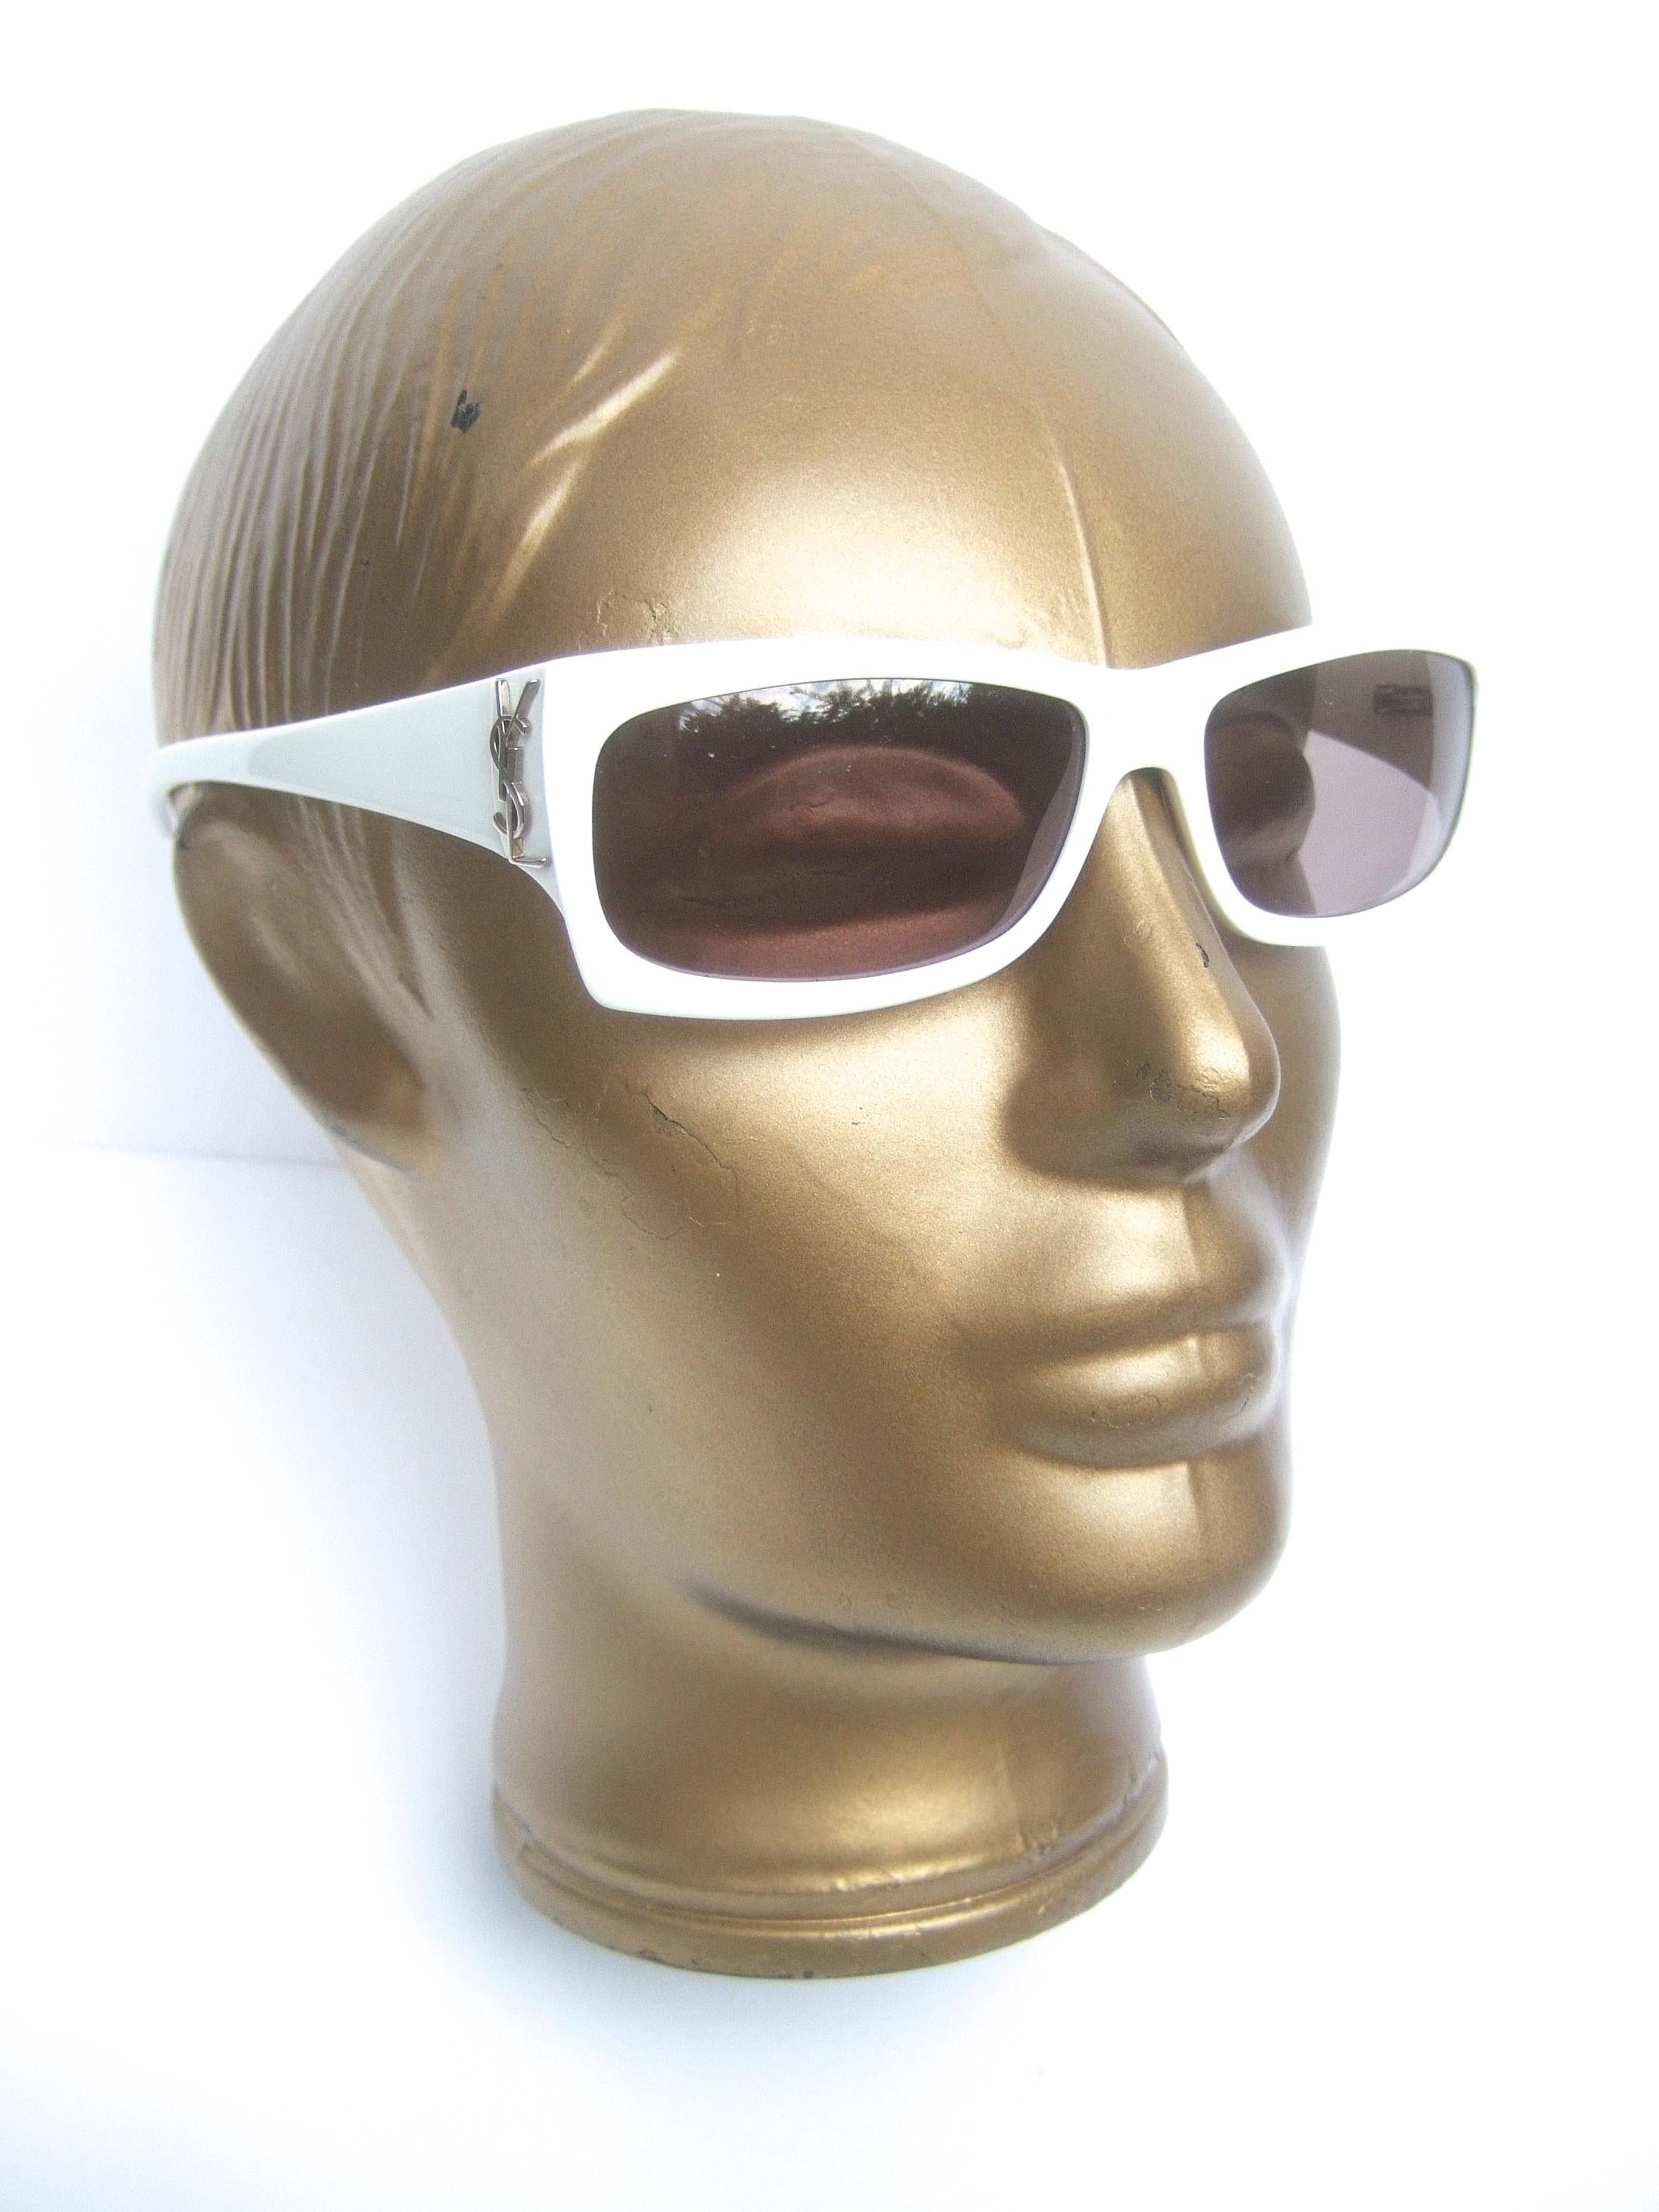 Yves Saint Laurent Italian White Plastic Frame Sunglasses in YSL Case c 1990s 7